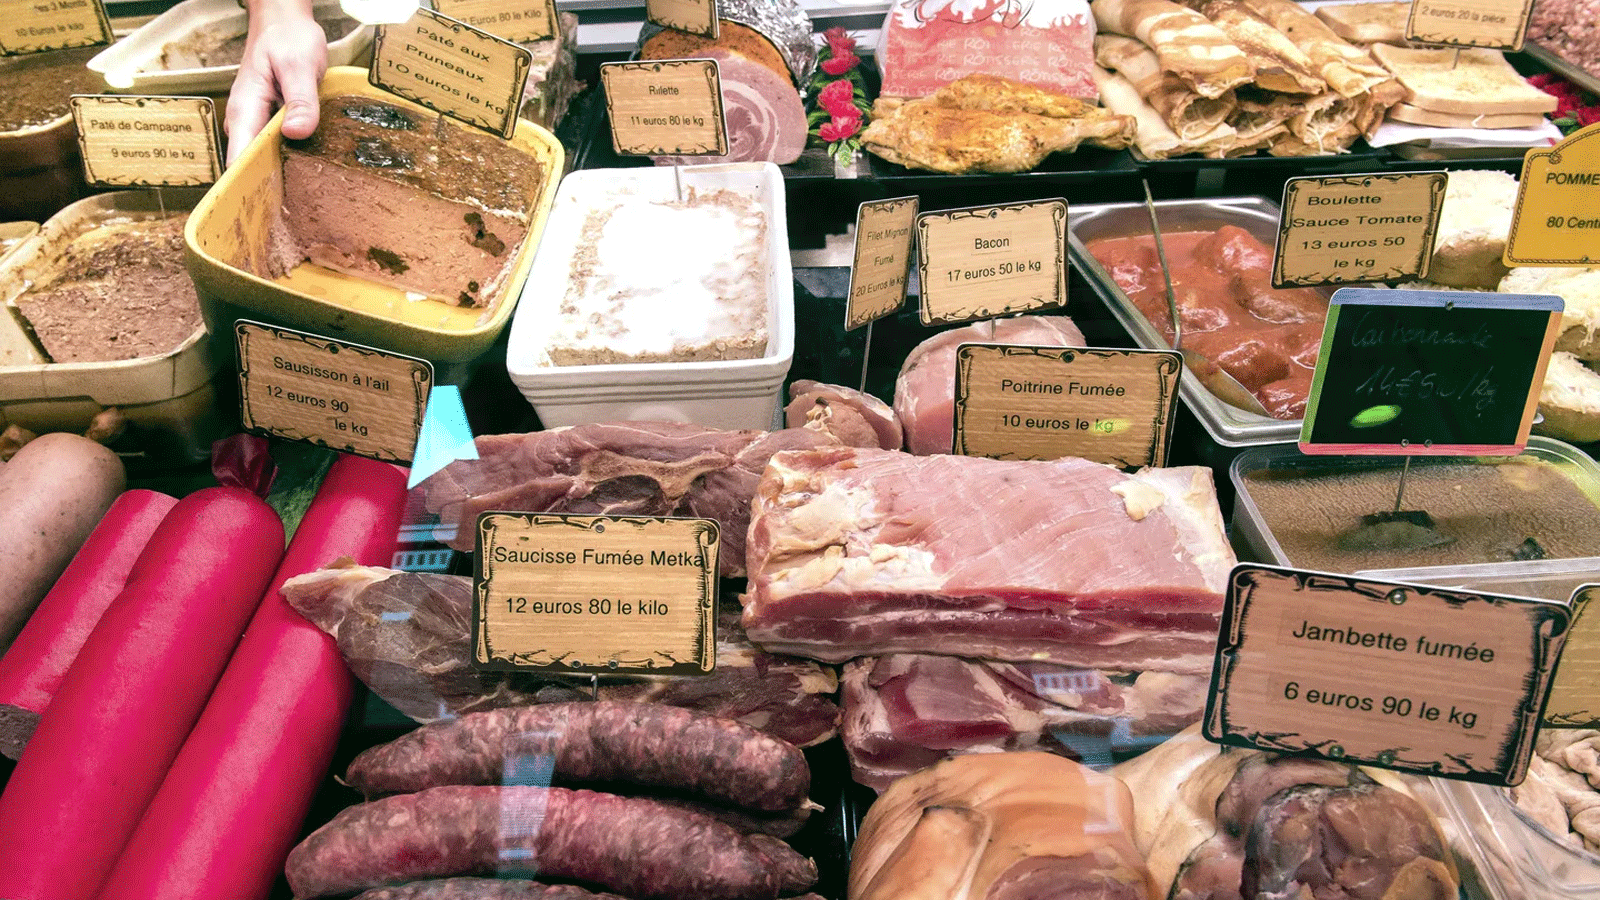 صورة لمجموعة أنواع من اللحوم المصنعة التي ينصح الأطباء بالتقليل من تناولها.